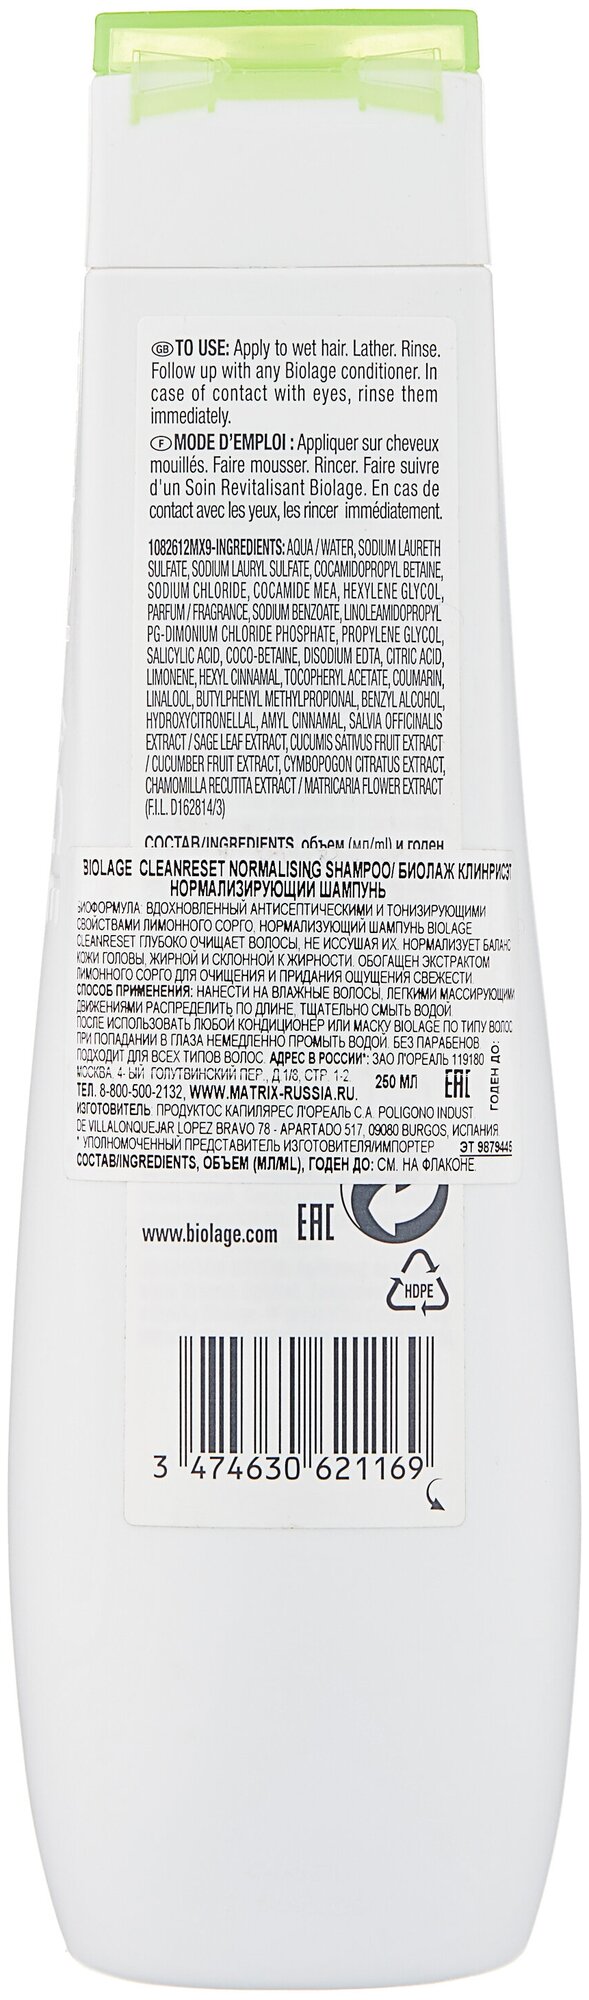 Шампунь MATRIX нормализующий Biolage Cleanreset Normalizing для кожи головы, 250 мл